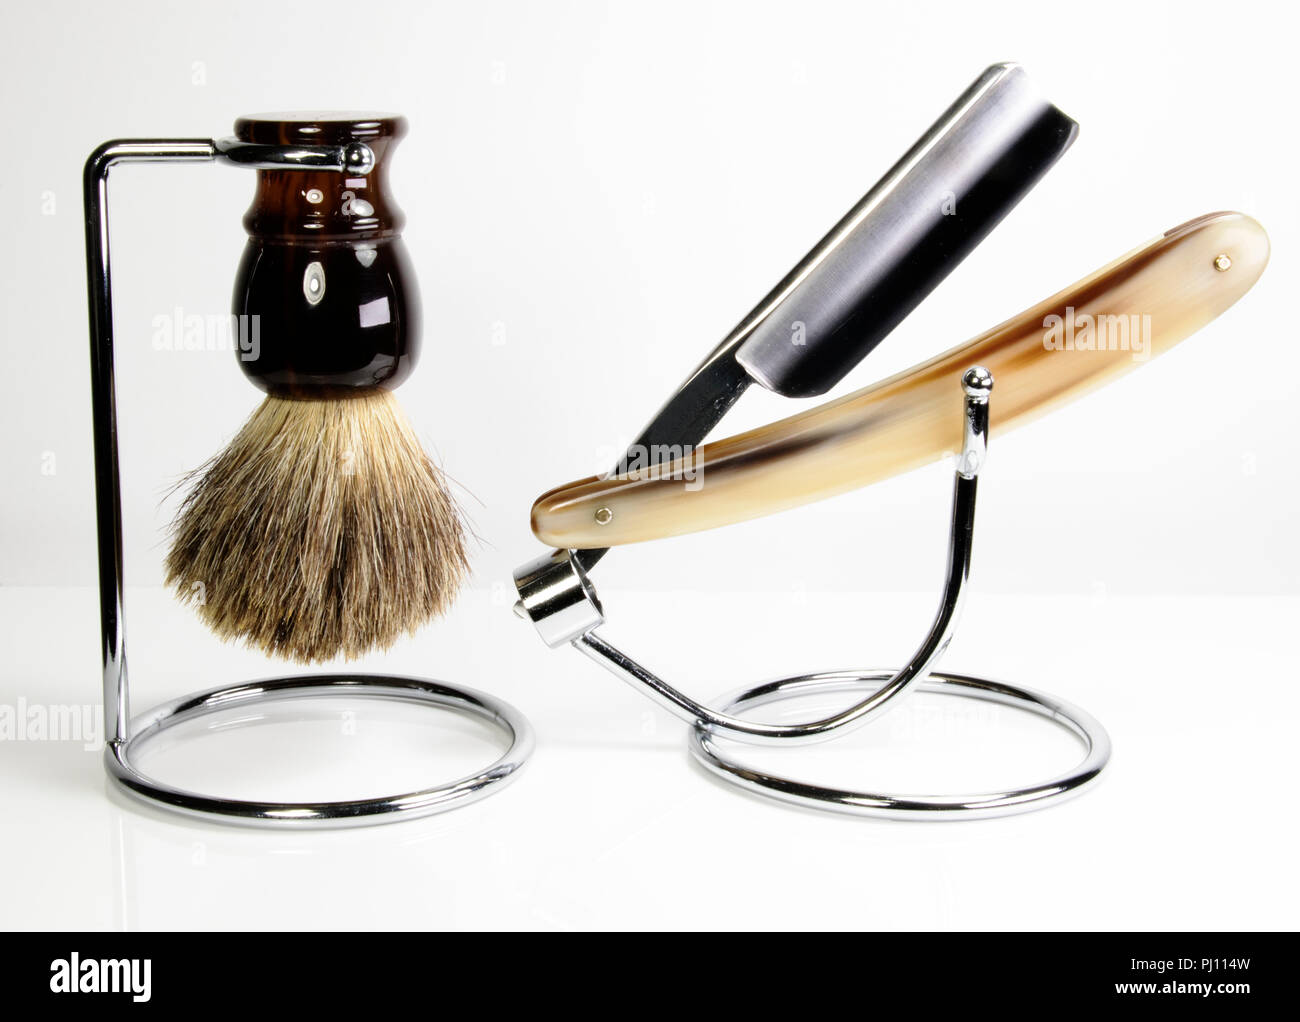 Friseur- Set mit Rasiermesser und Seifenschaum Bürste. Herren vintage  Nassrasur Ausrüstung Bürste und Rasierer in einem Ständer Stockfotografie -  Alamy